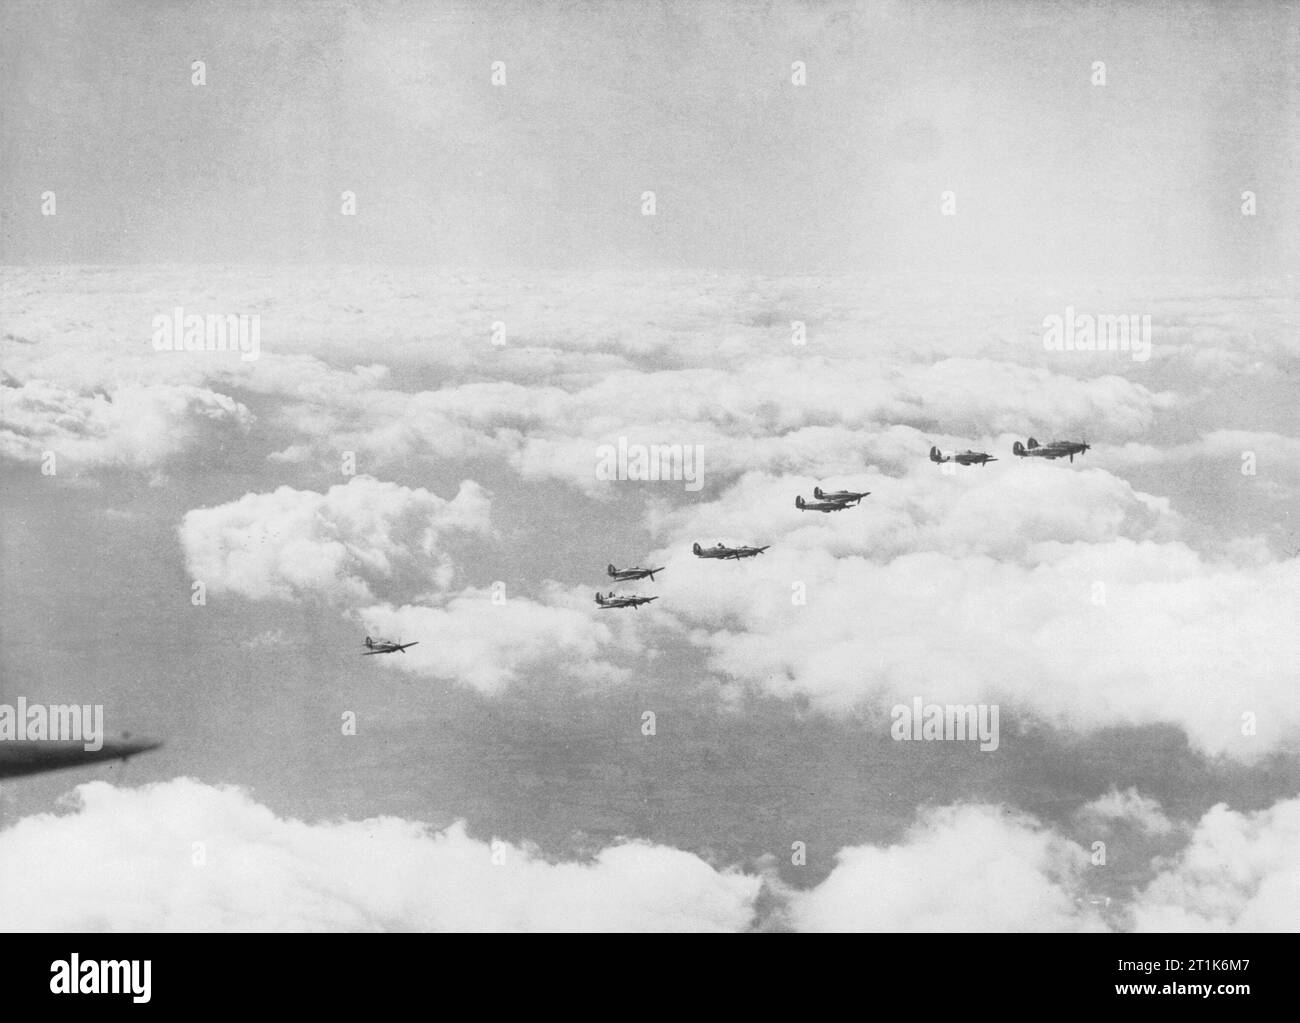 Hawker Hurricanes von Nr. 242 Squadron RAF, Oktober 1940. Mark 1 Hawker Hurricanes von 242 (Kanadier) Fighter Squadron von Squadron Leader Douglas Bader DSO, DFC geführt. Bader war einer der besten Kämpfer der Royal Air Force Asse, bis er 1941 erschossen wurde, verbrachte er den Rest des Krieges in einem deutschen Kriegsgefangenenlager. Stockfoto